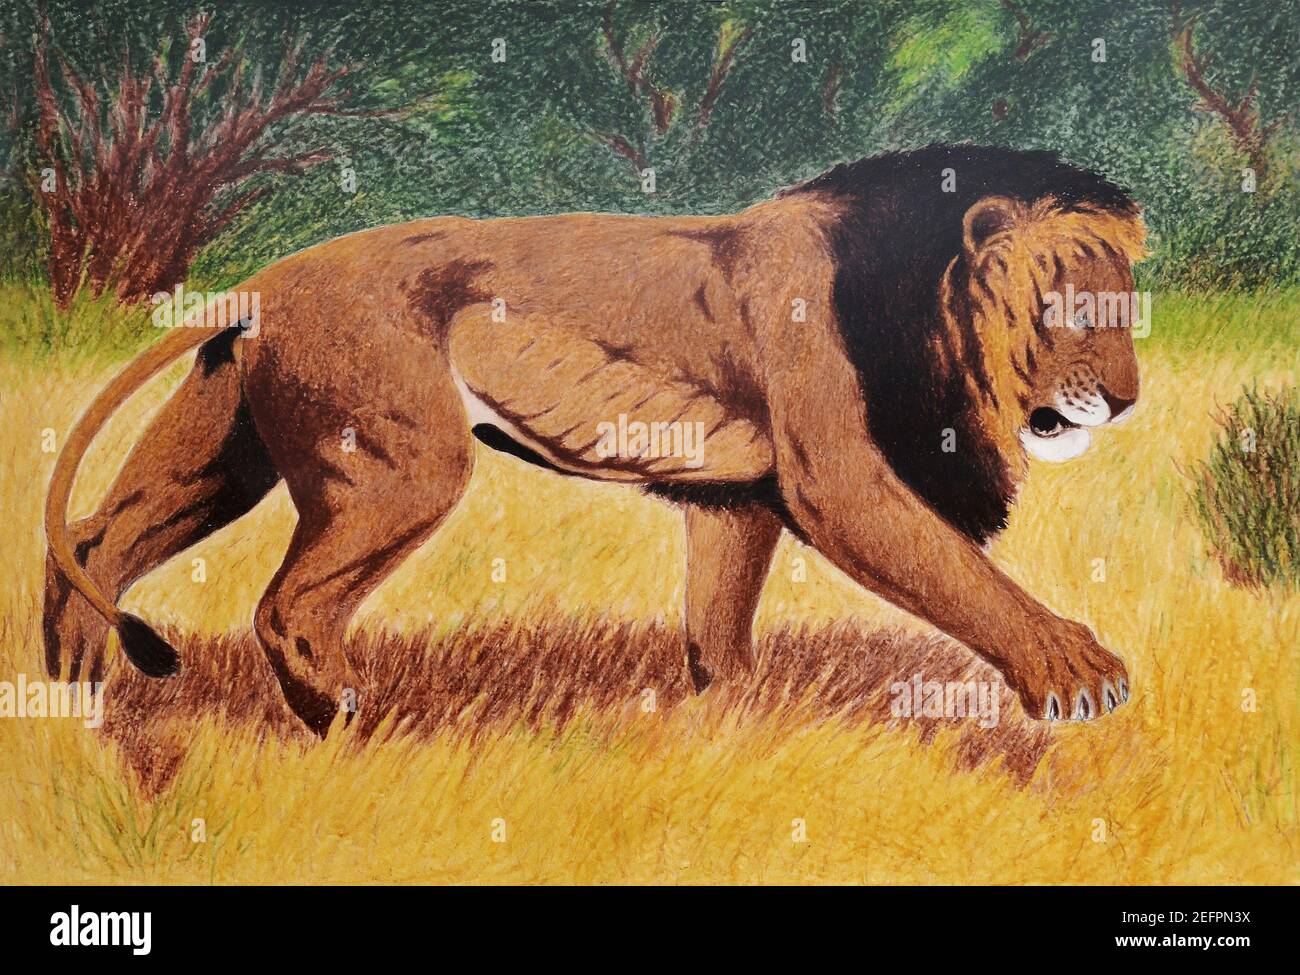 peinture de vieux lion marchant dans la savane Banque D'Images